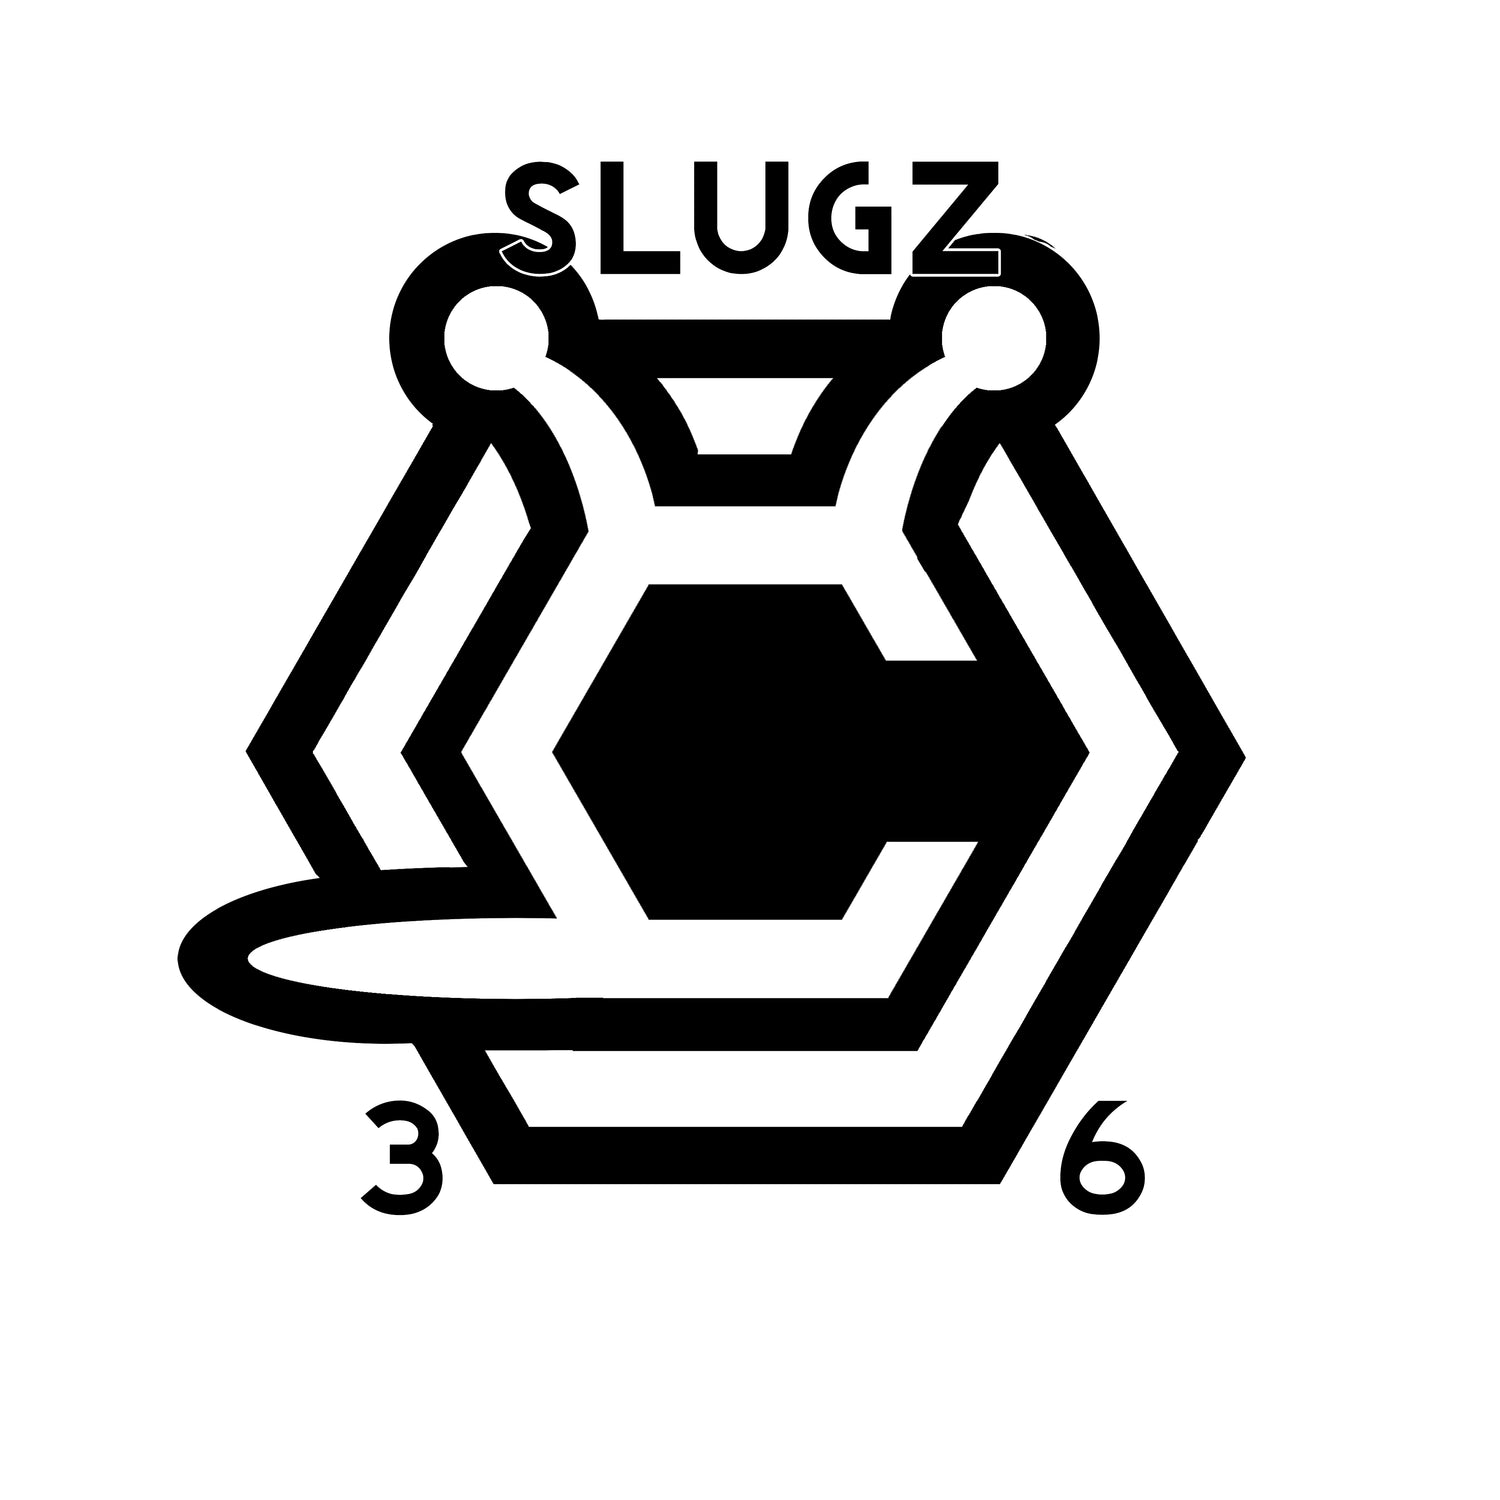 Slugz